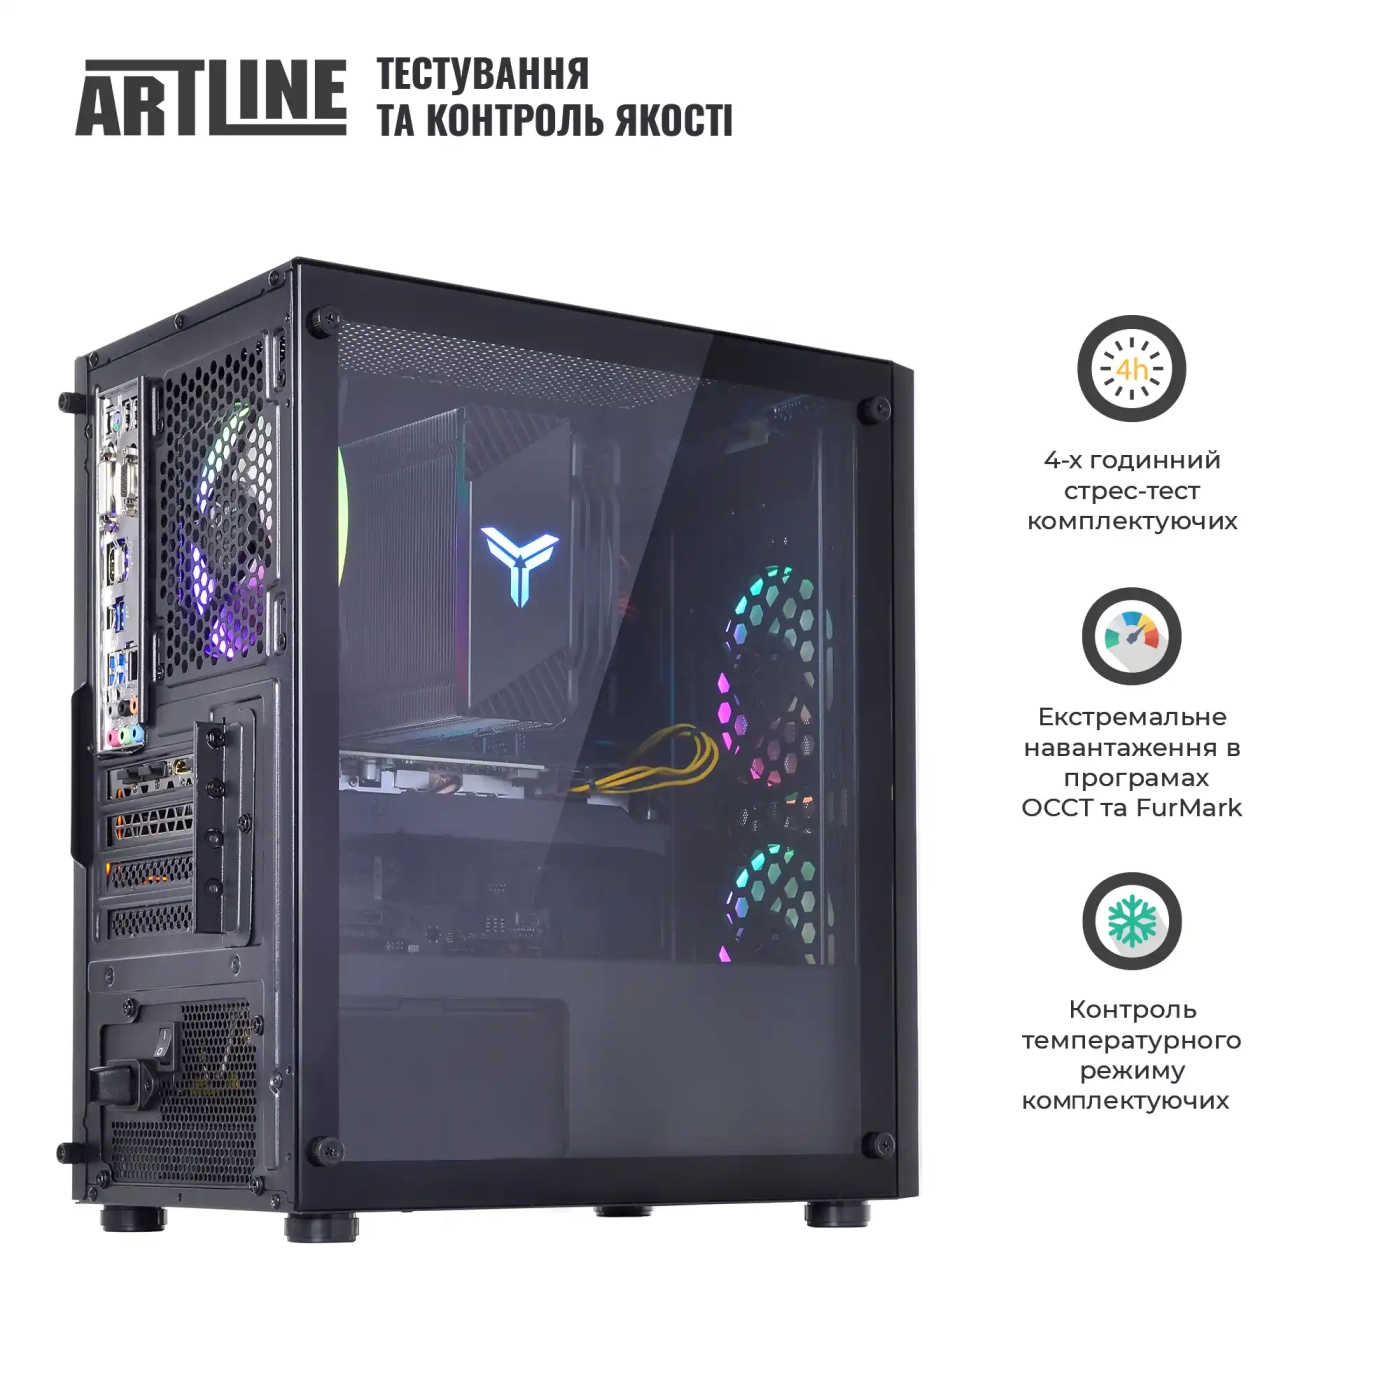 Купить Компьютер ARTLINE Gaming X72v19 - фото 7